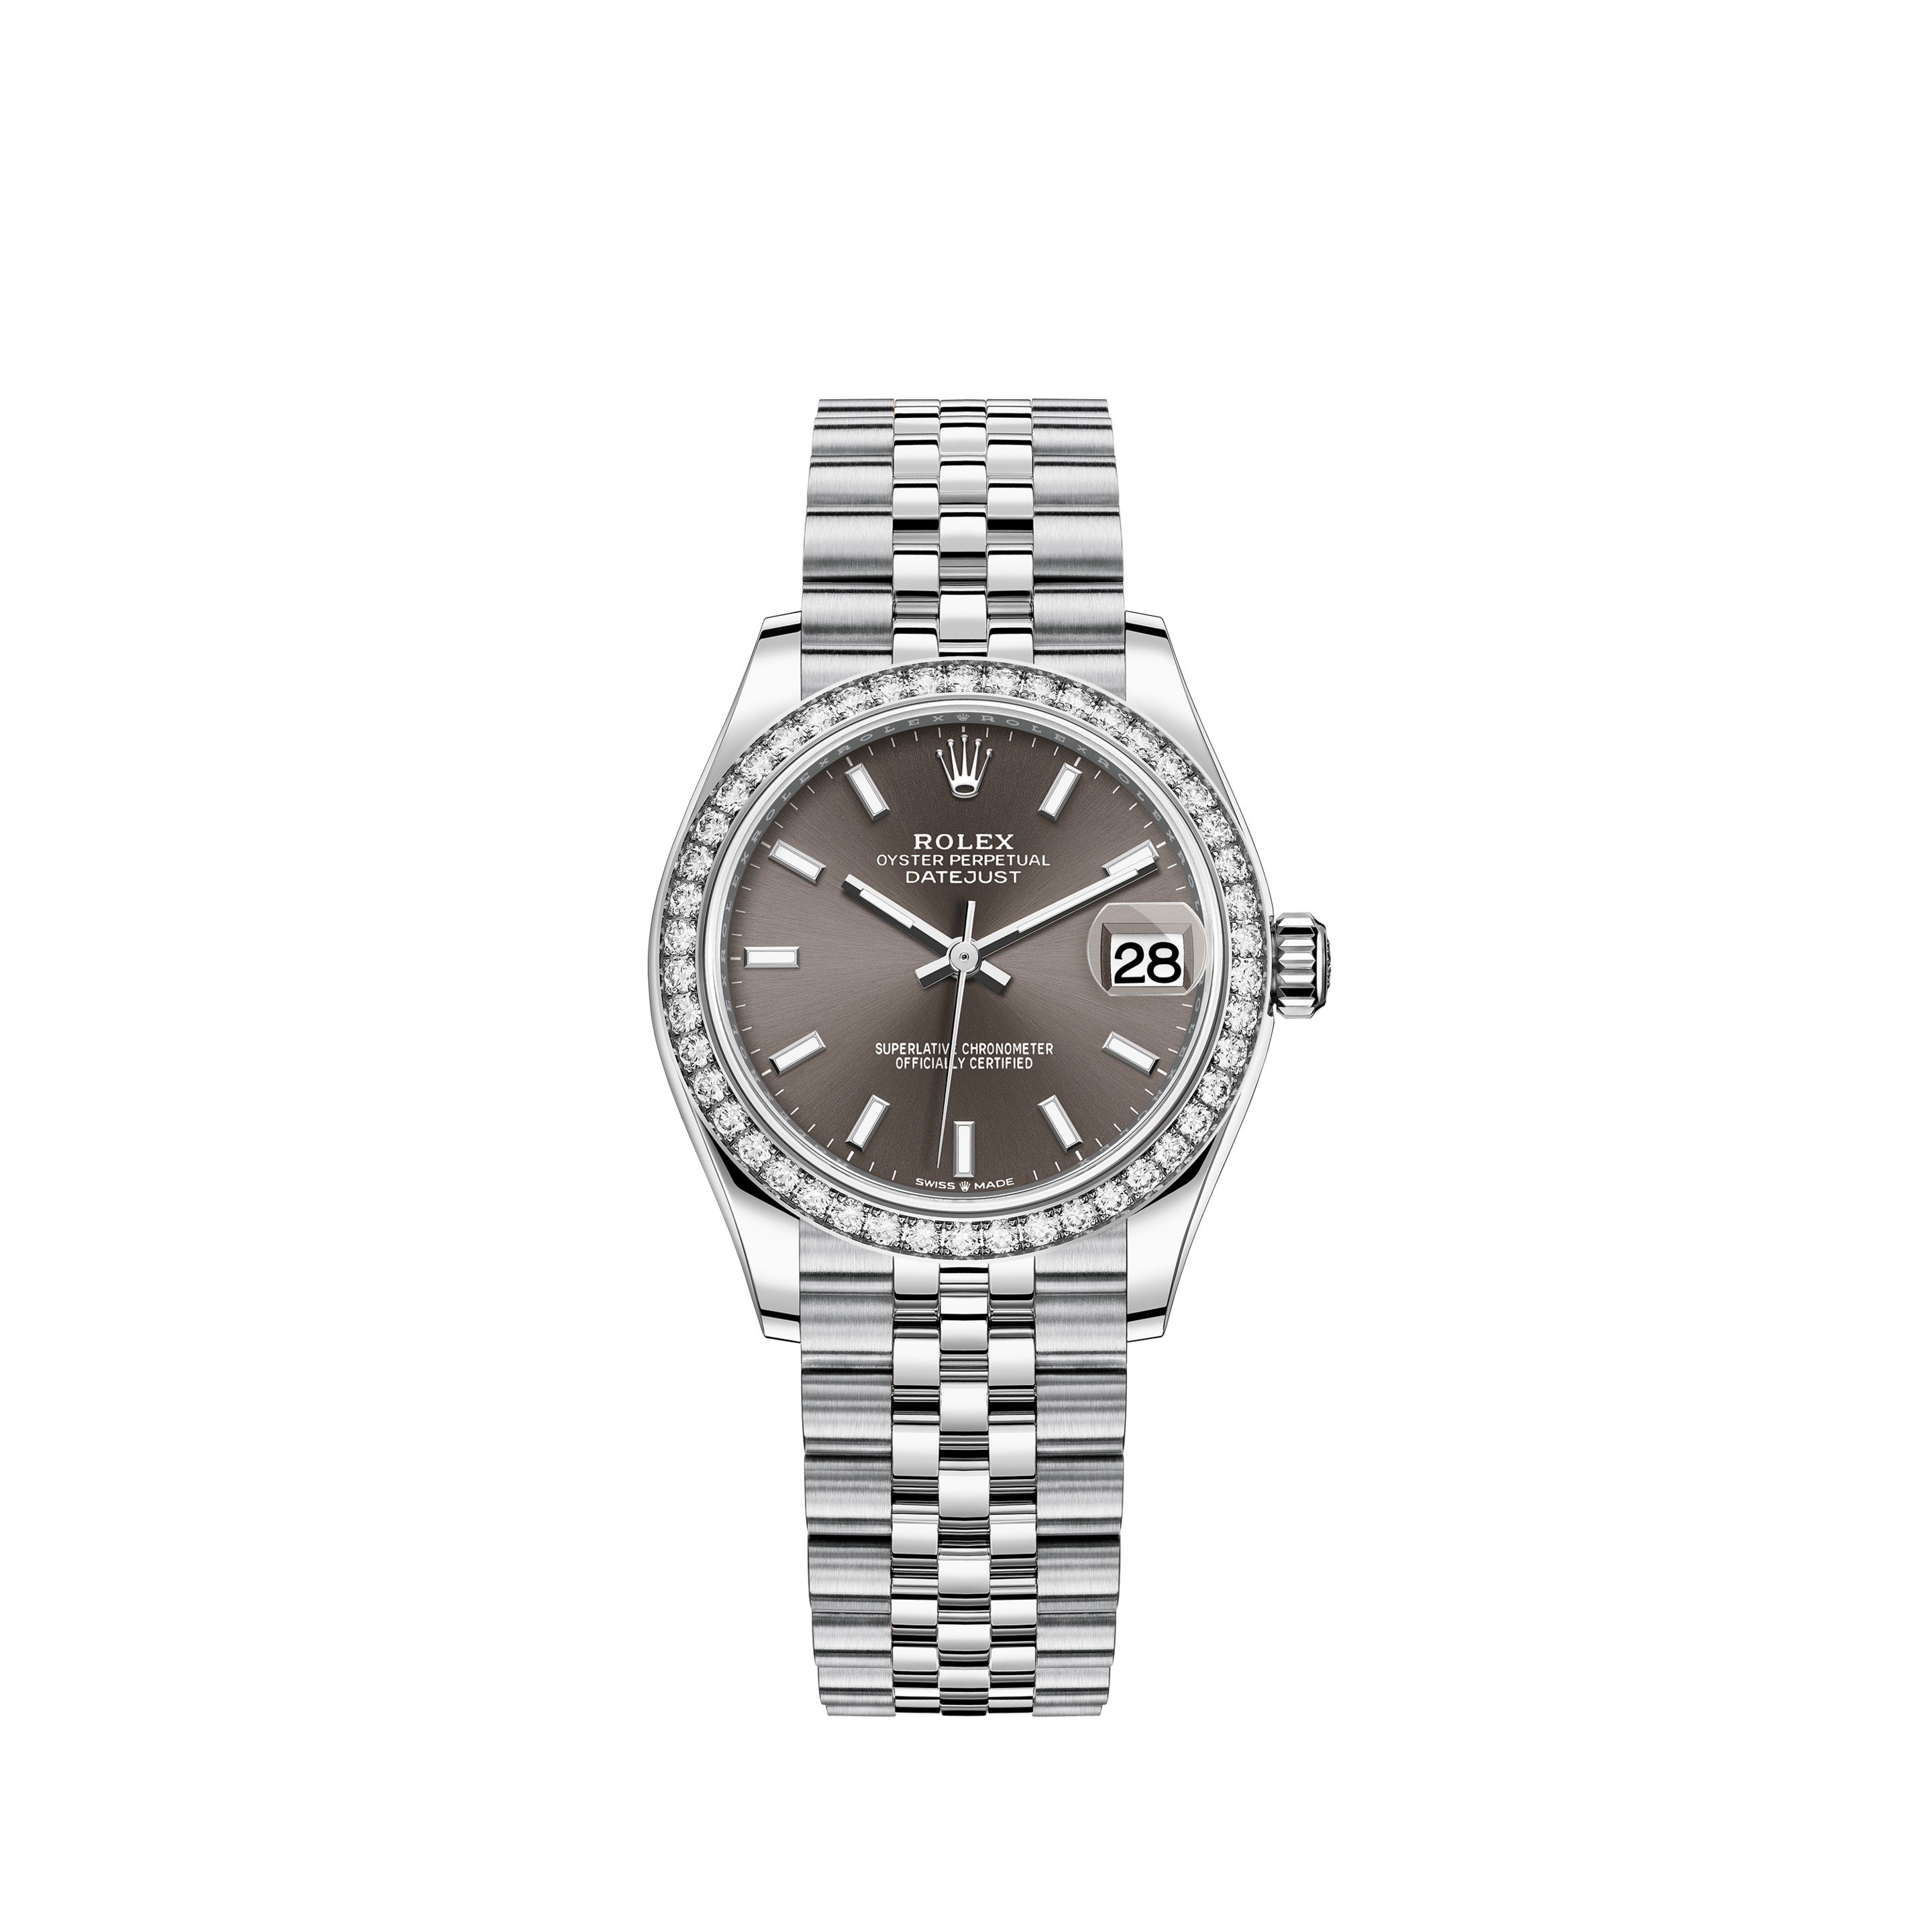 Datejust 31 278384RBR White Gold & Stainless Steel Watch (Dark Grey)